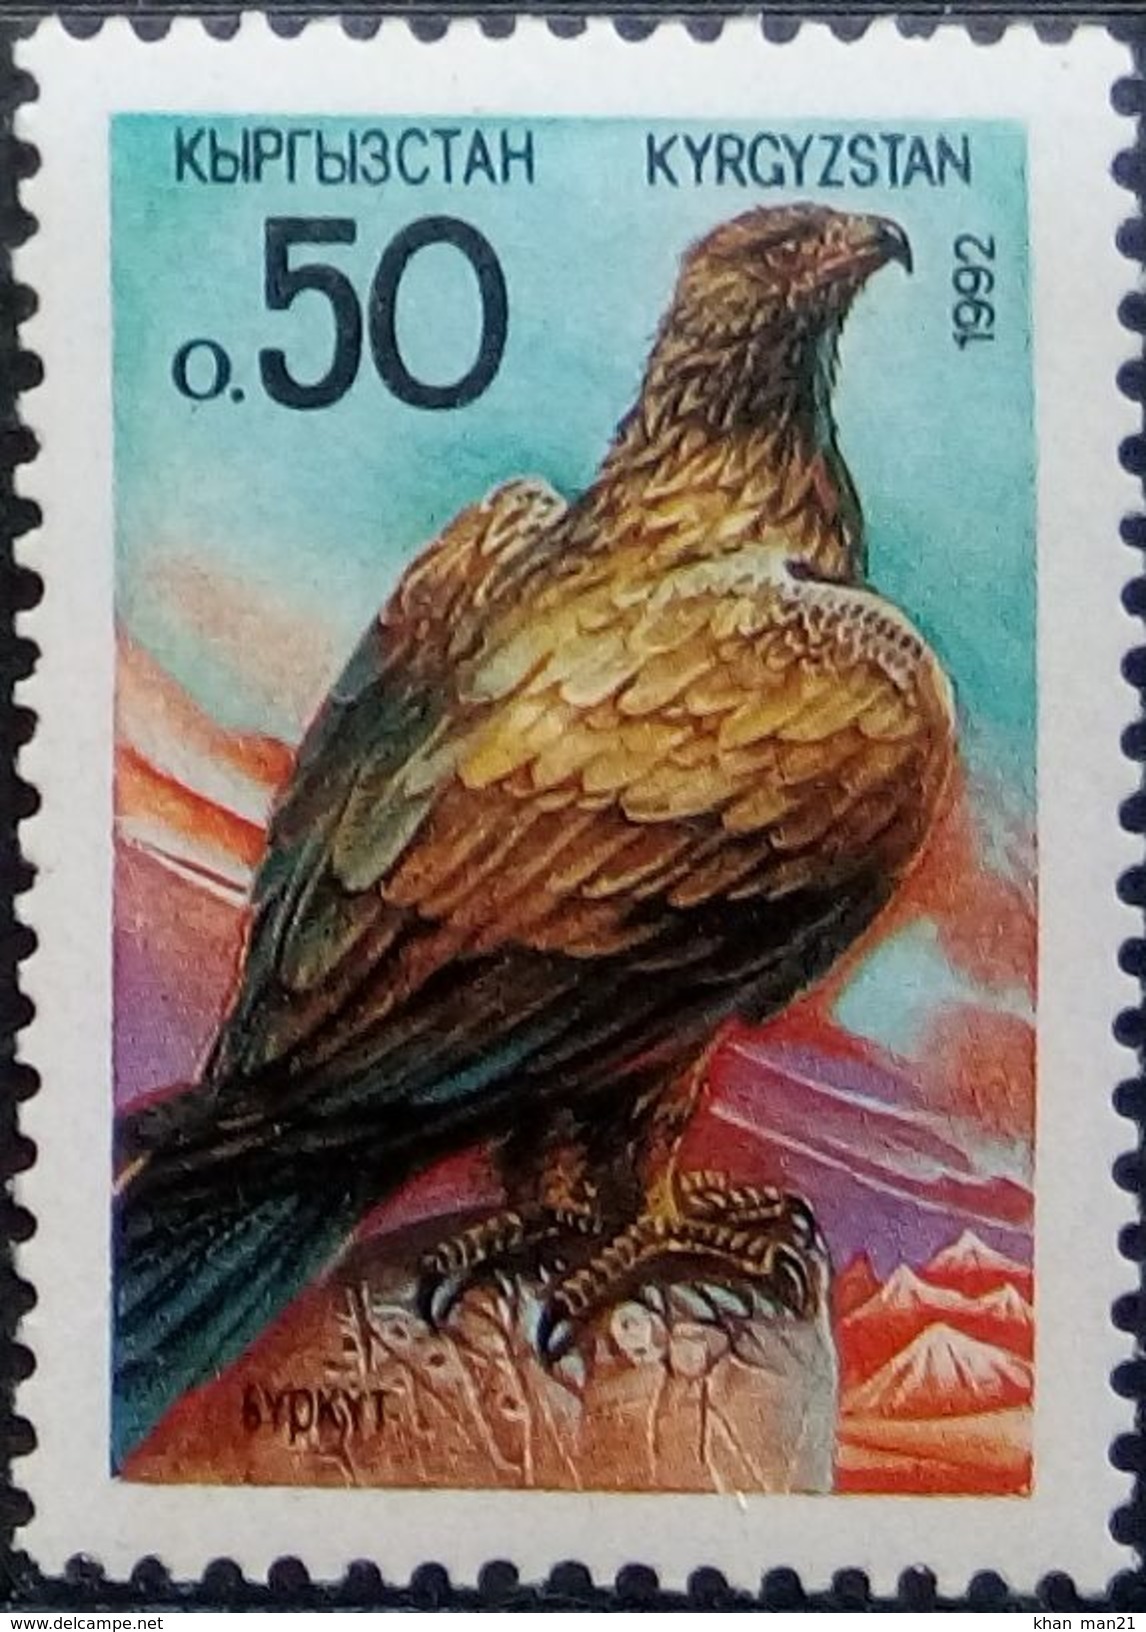 Kyrgyzstan, 1992, Mi. 2, Sc. 2, SG 2, Birds Of Prey, Hawk, Eagle, MNH - Aquile & Rapaci Diurni